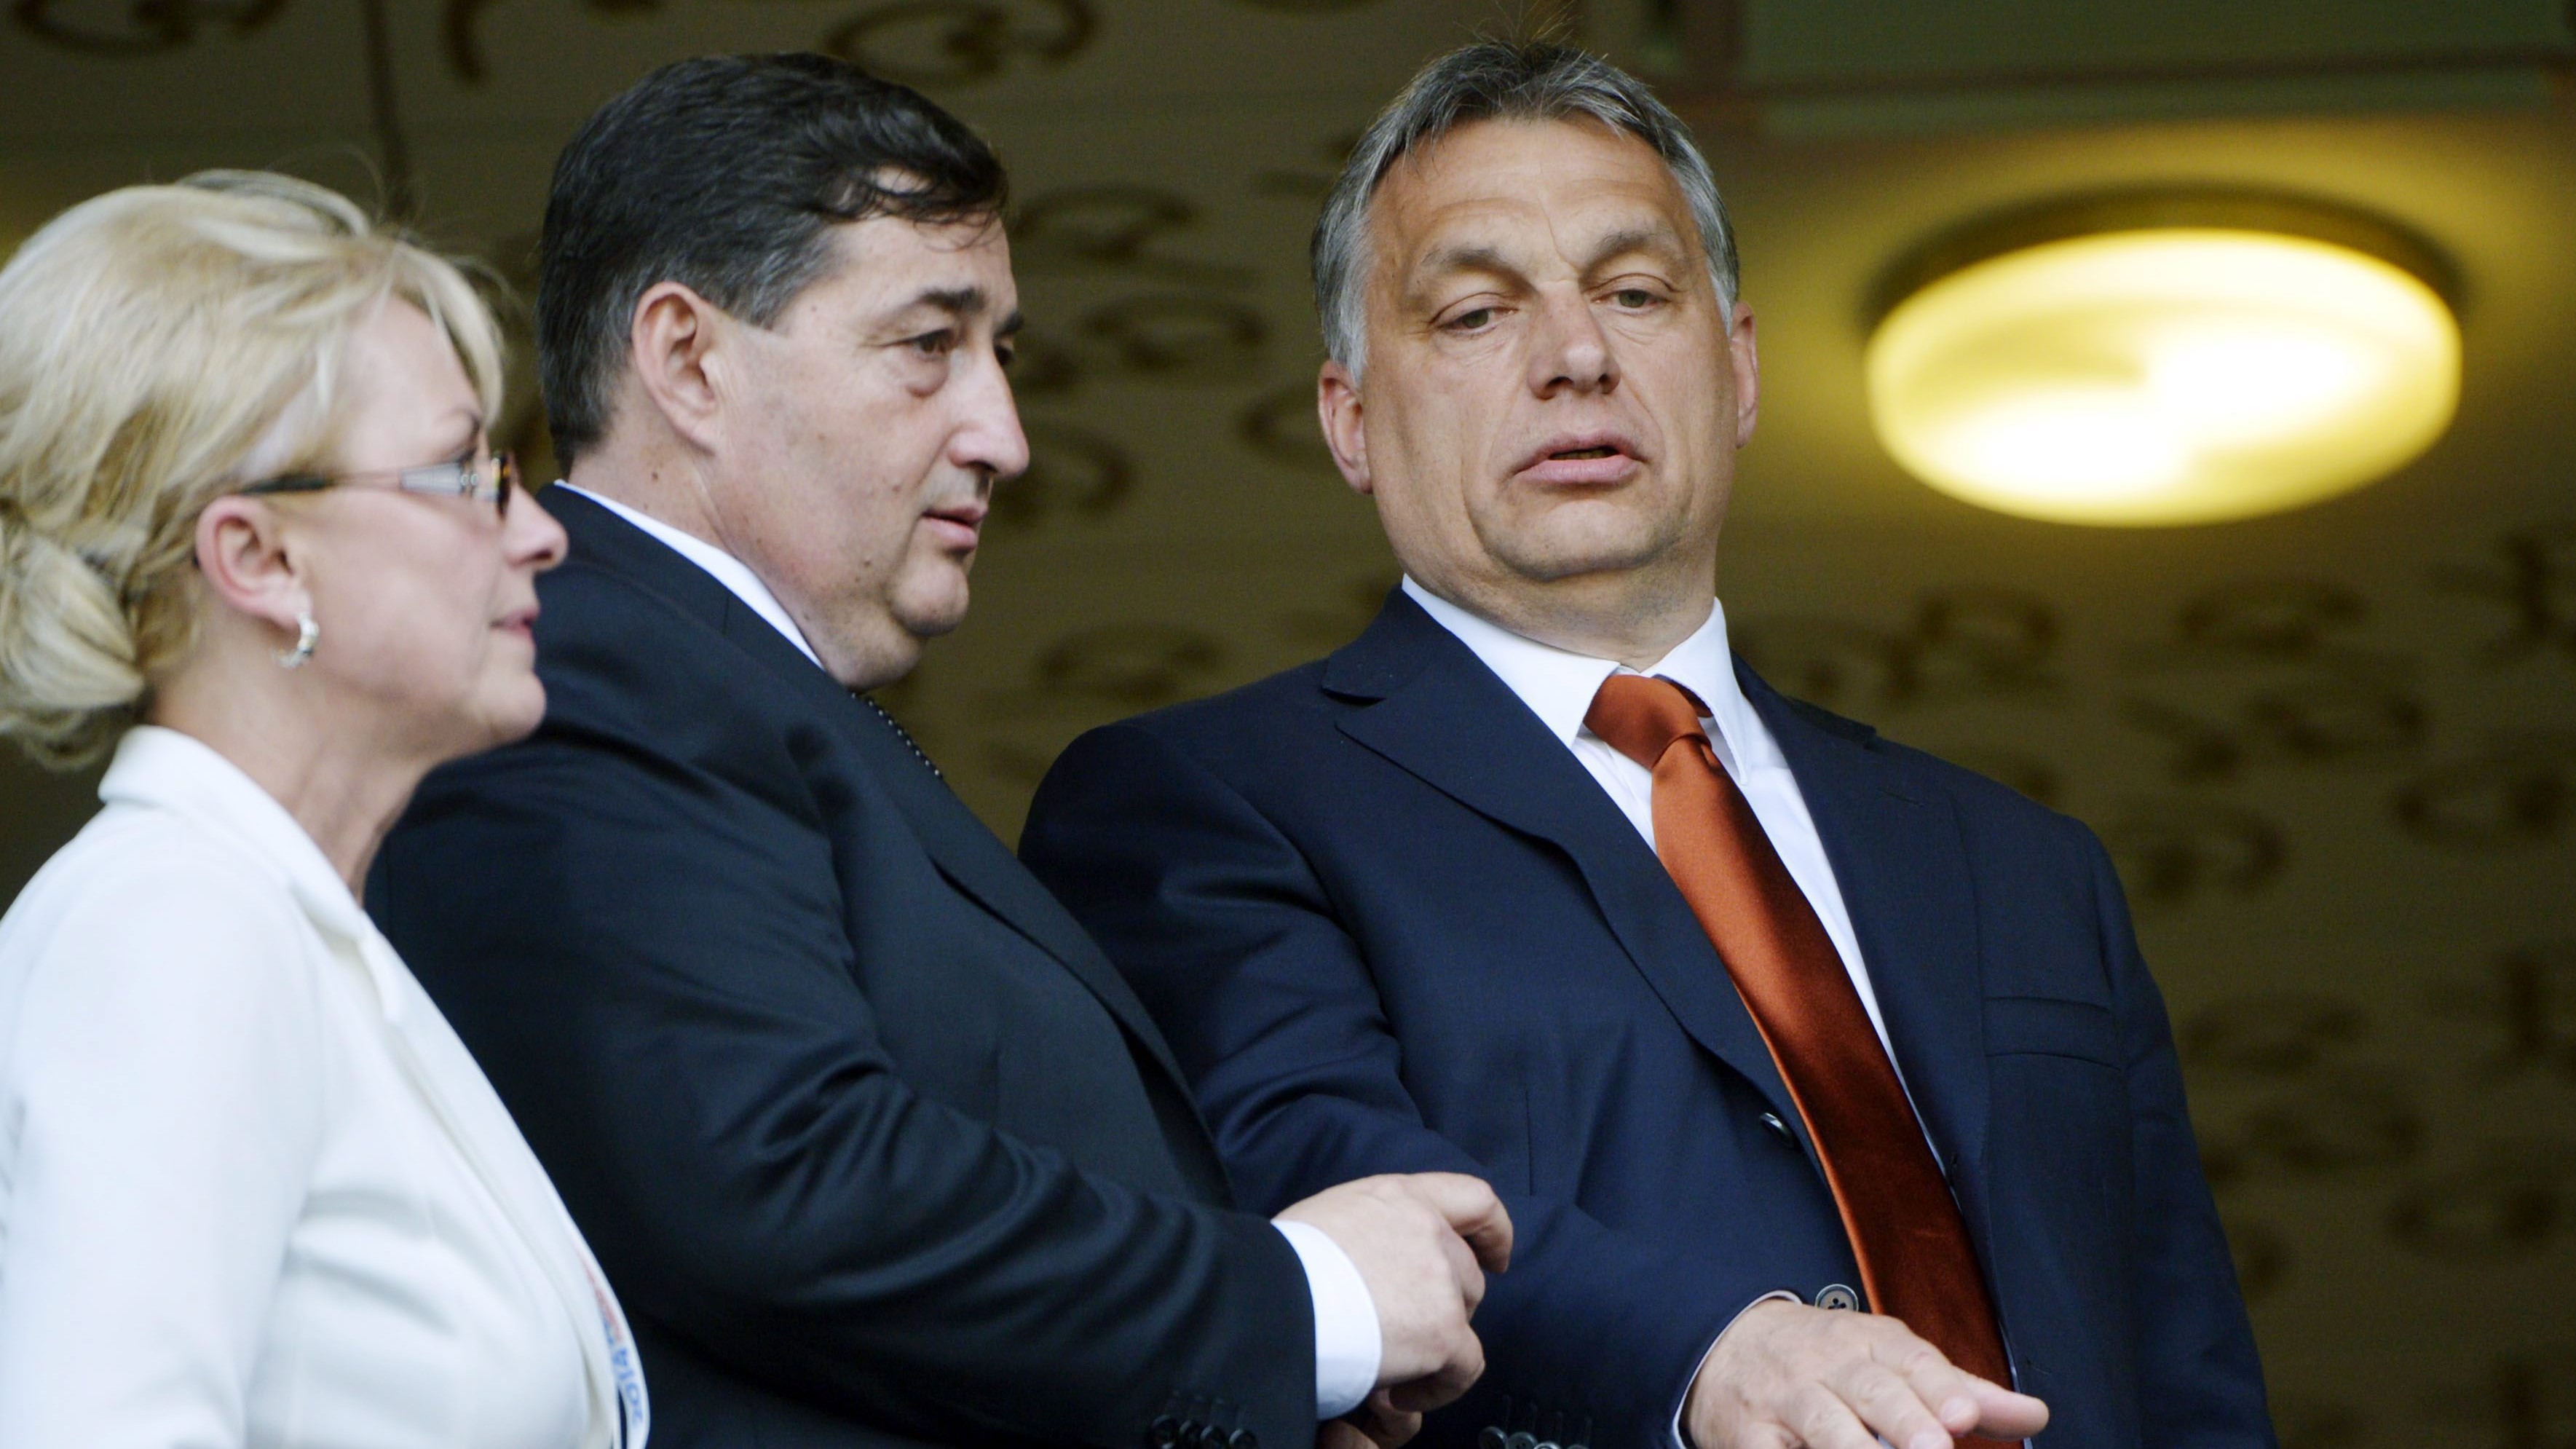 Mészáros Nem Stróman Lőrinc fizette ki az Orbán-klán 3 milliárdos tartozását